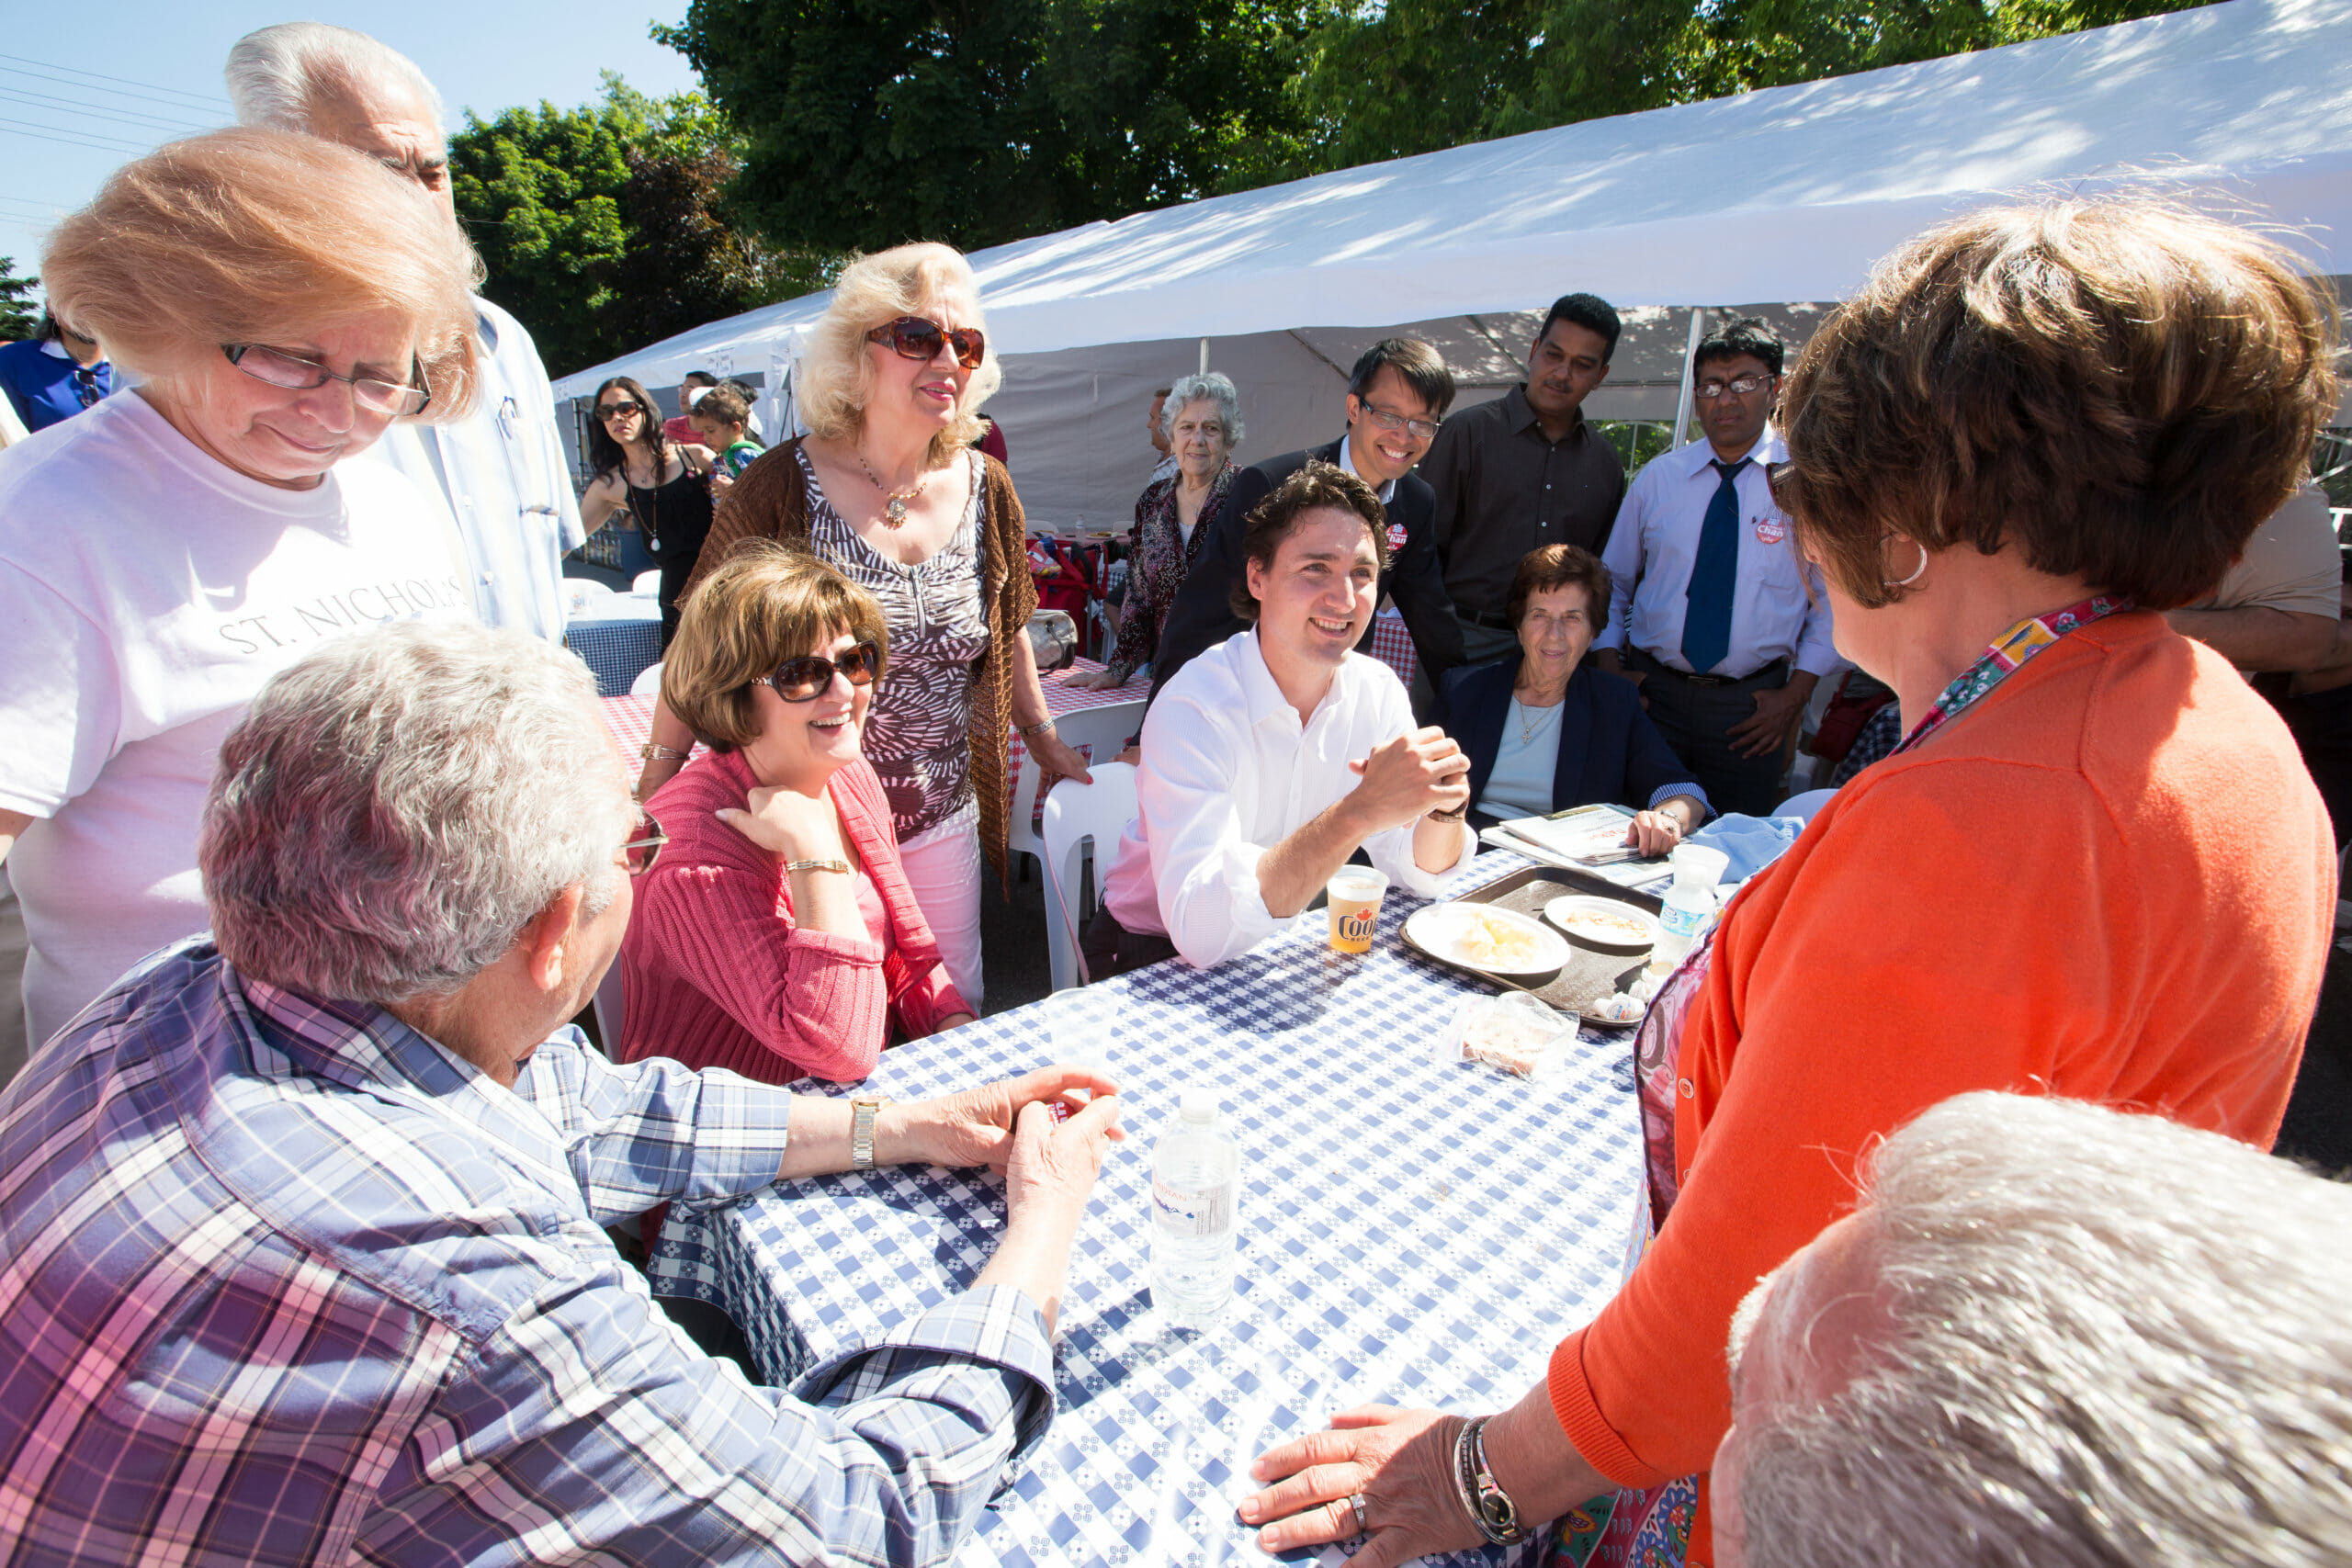 Justin et Arnold Chan, candidat libéral dans Scarborough—Agincourt, rencontrent les gens du quartier pendant le festival grec de la St. Nicholas. 15 juin 2014.